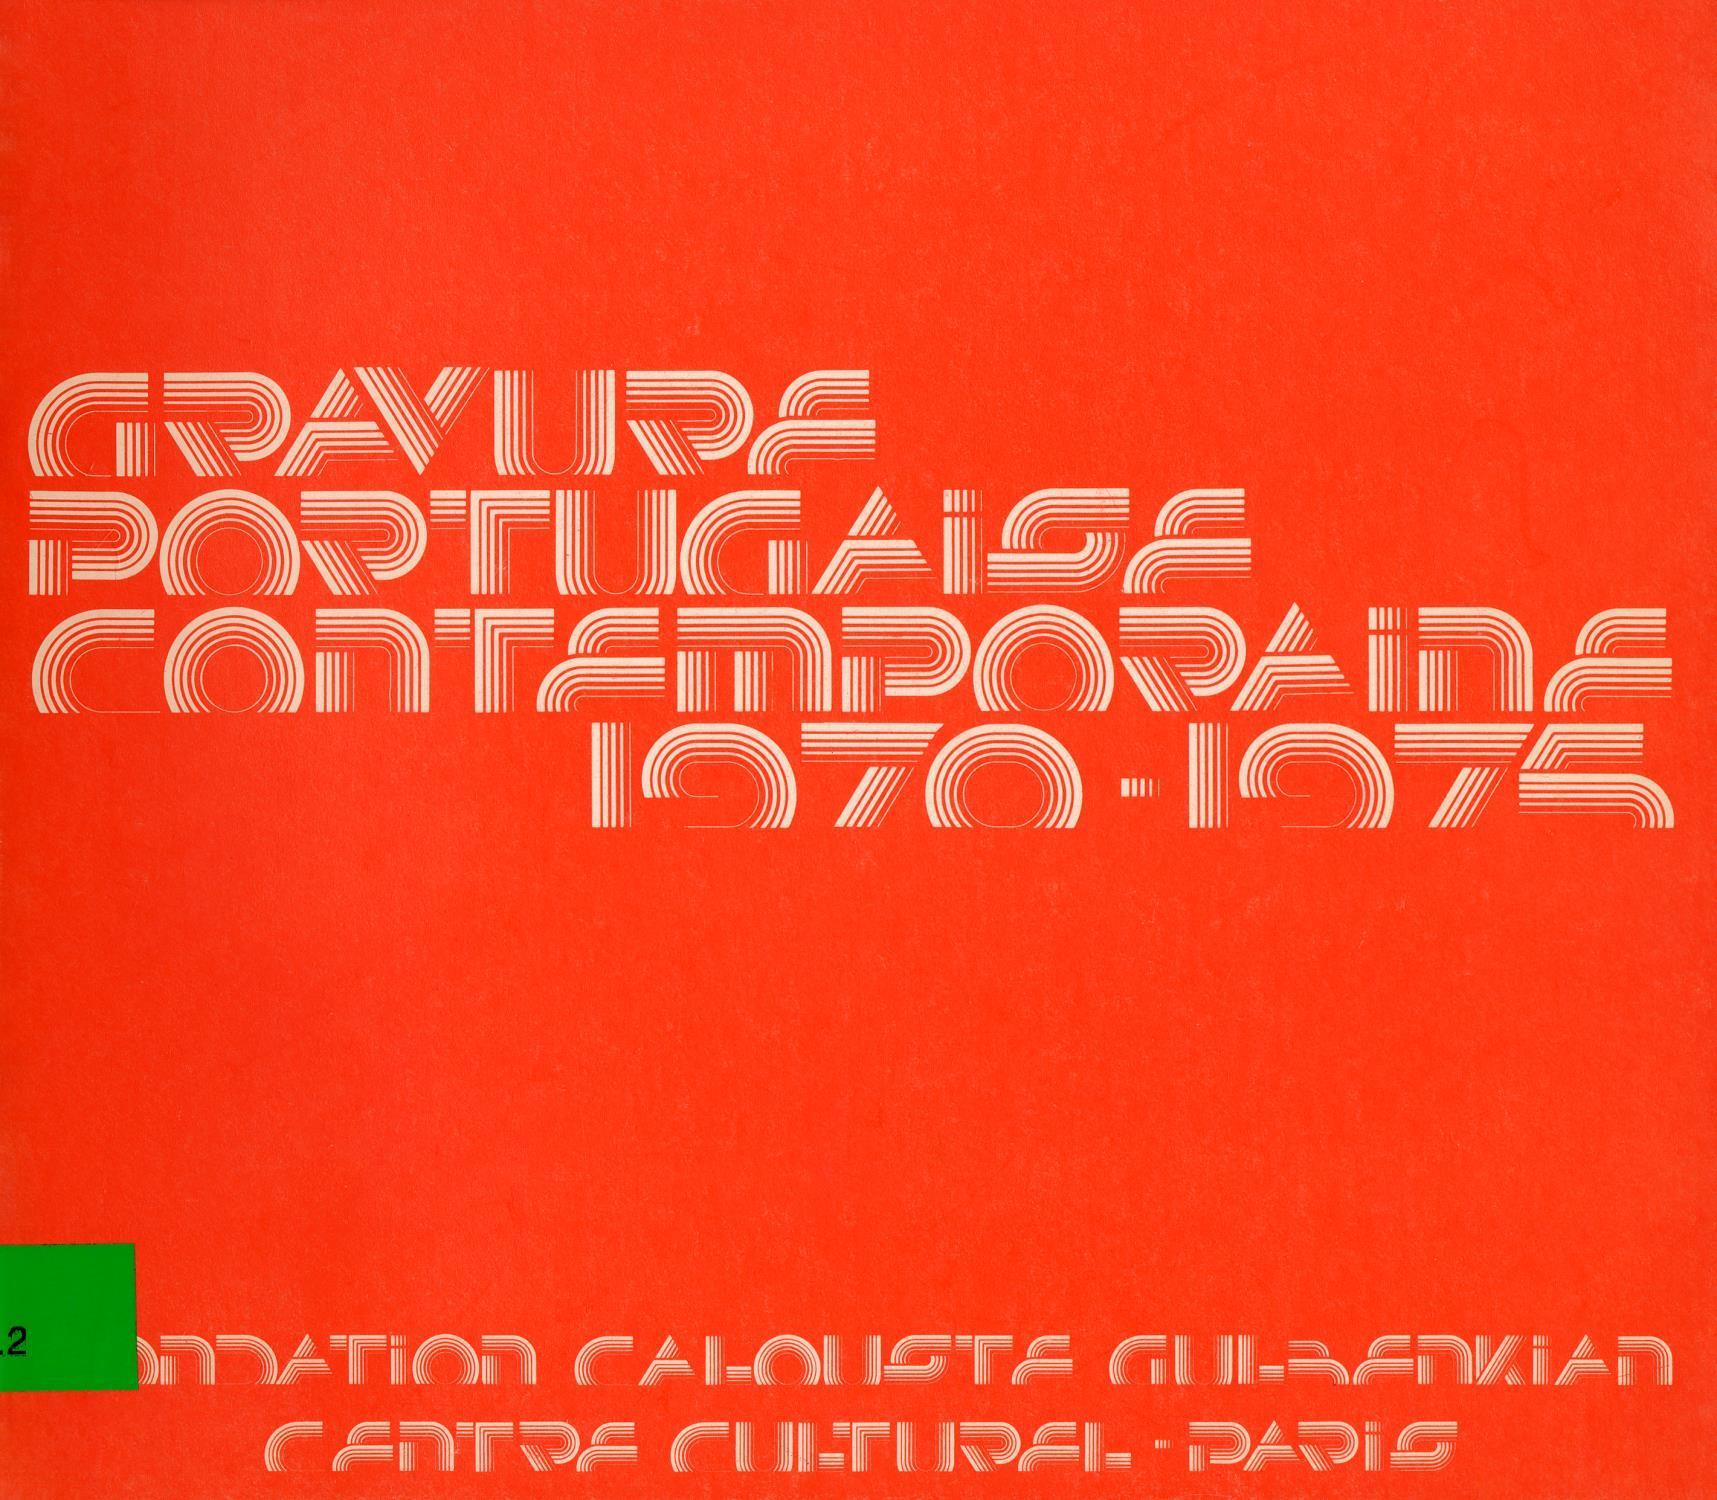 Gravure Portugaise Contemporaine, 1970 – 1975